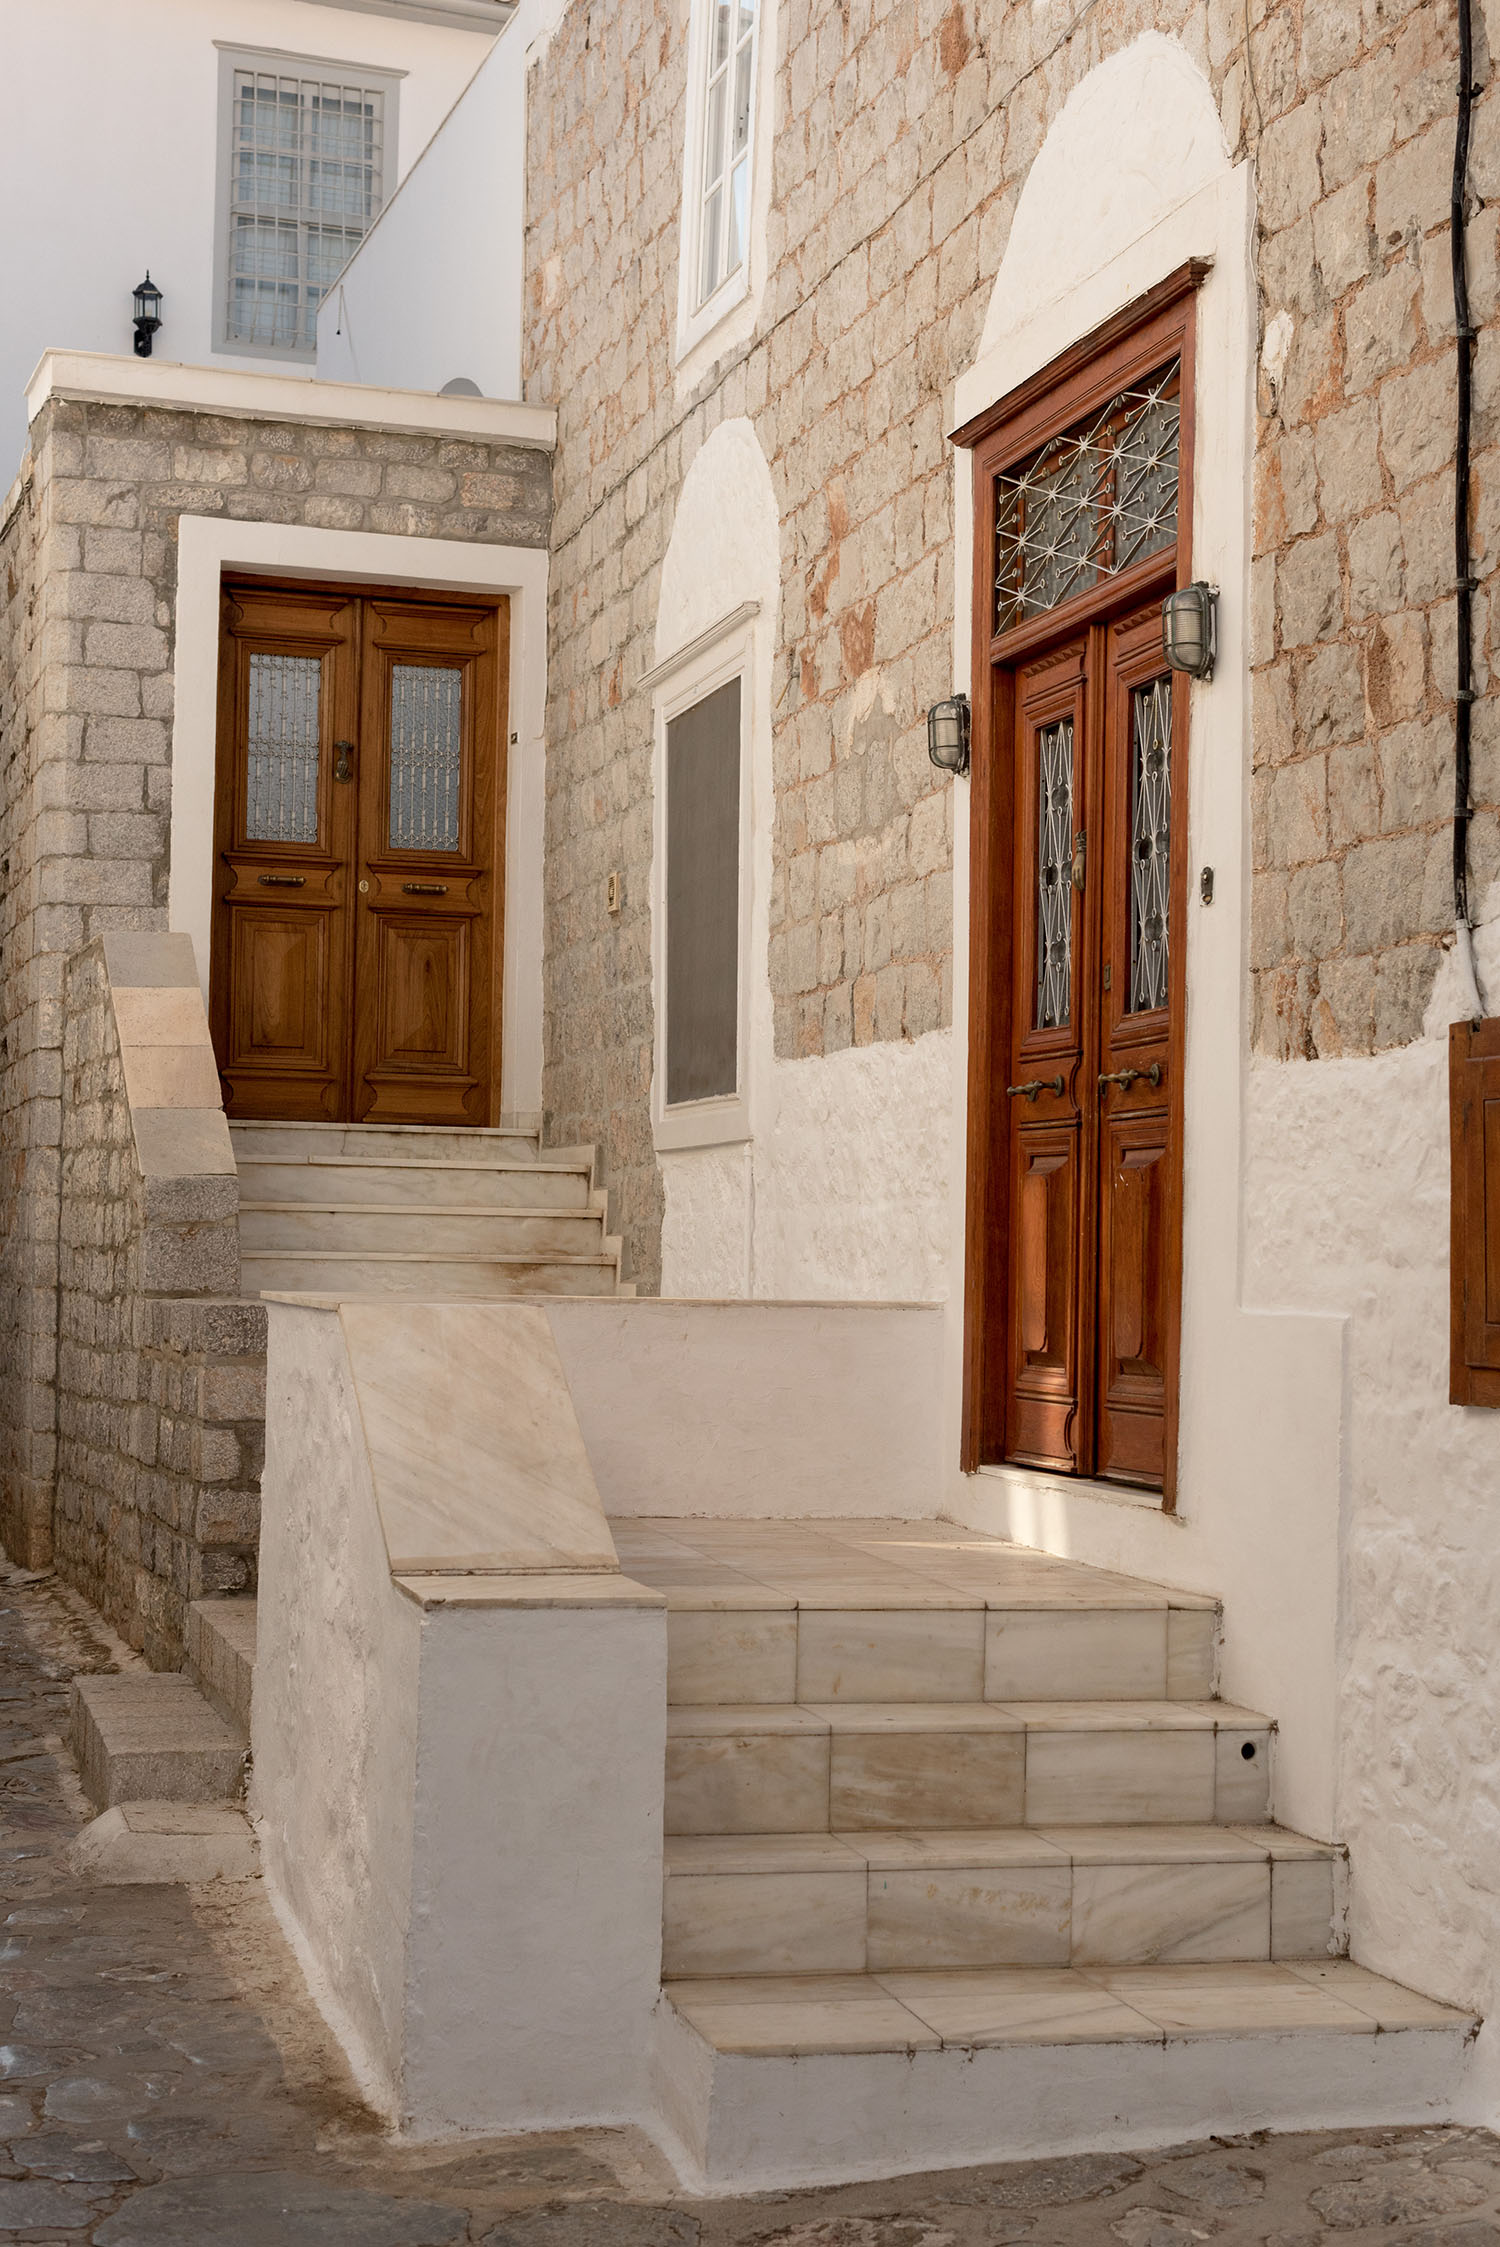 Coco & Vera - Wooden doors in the Saronic Islands in Greece